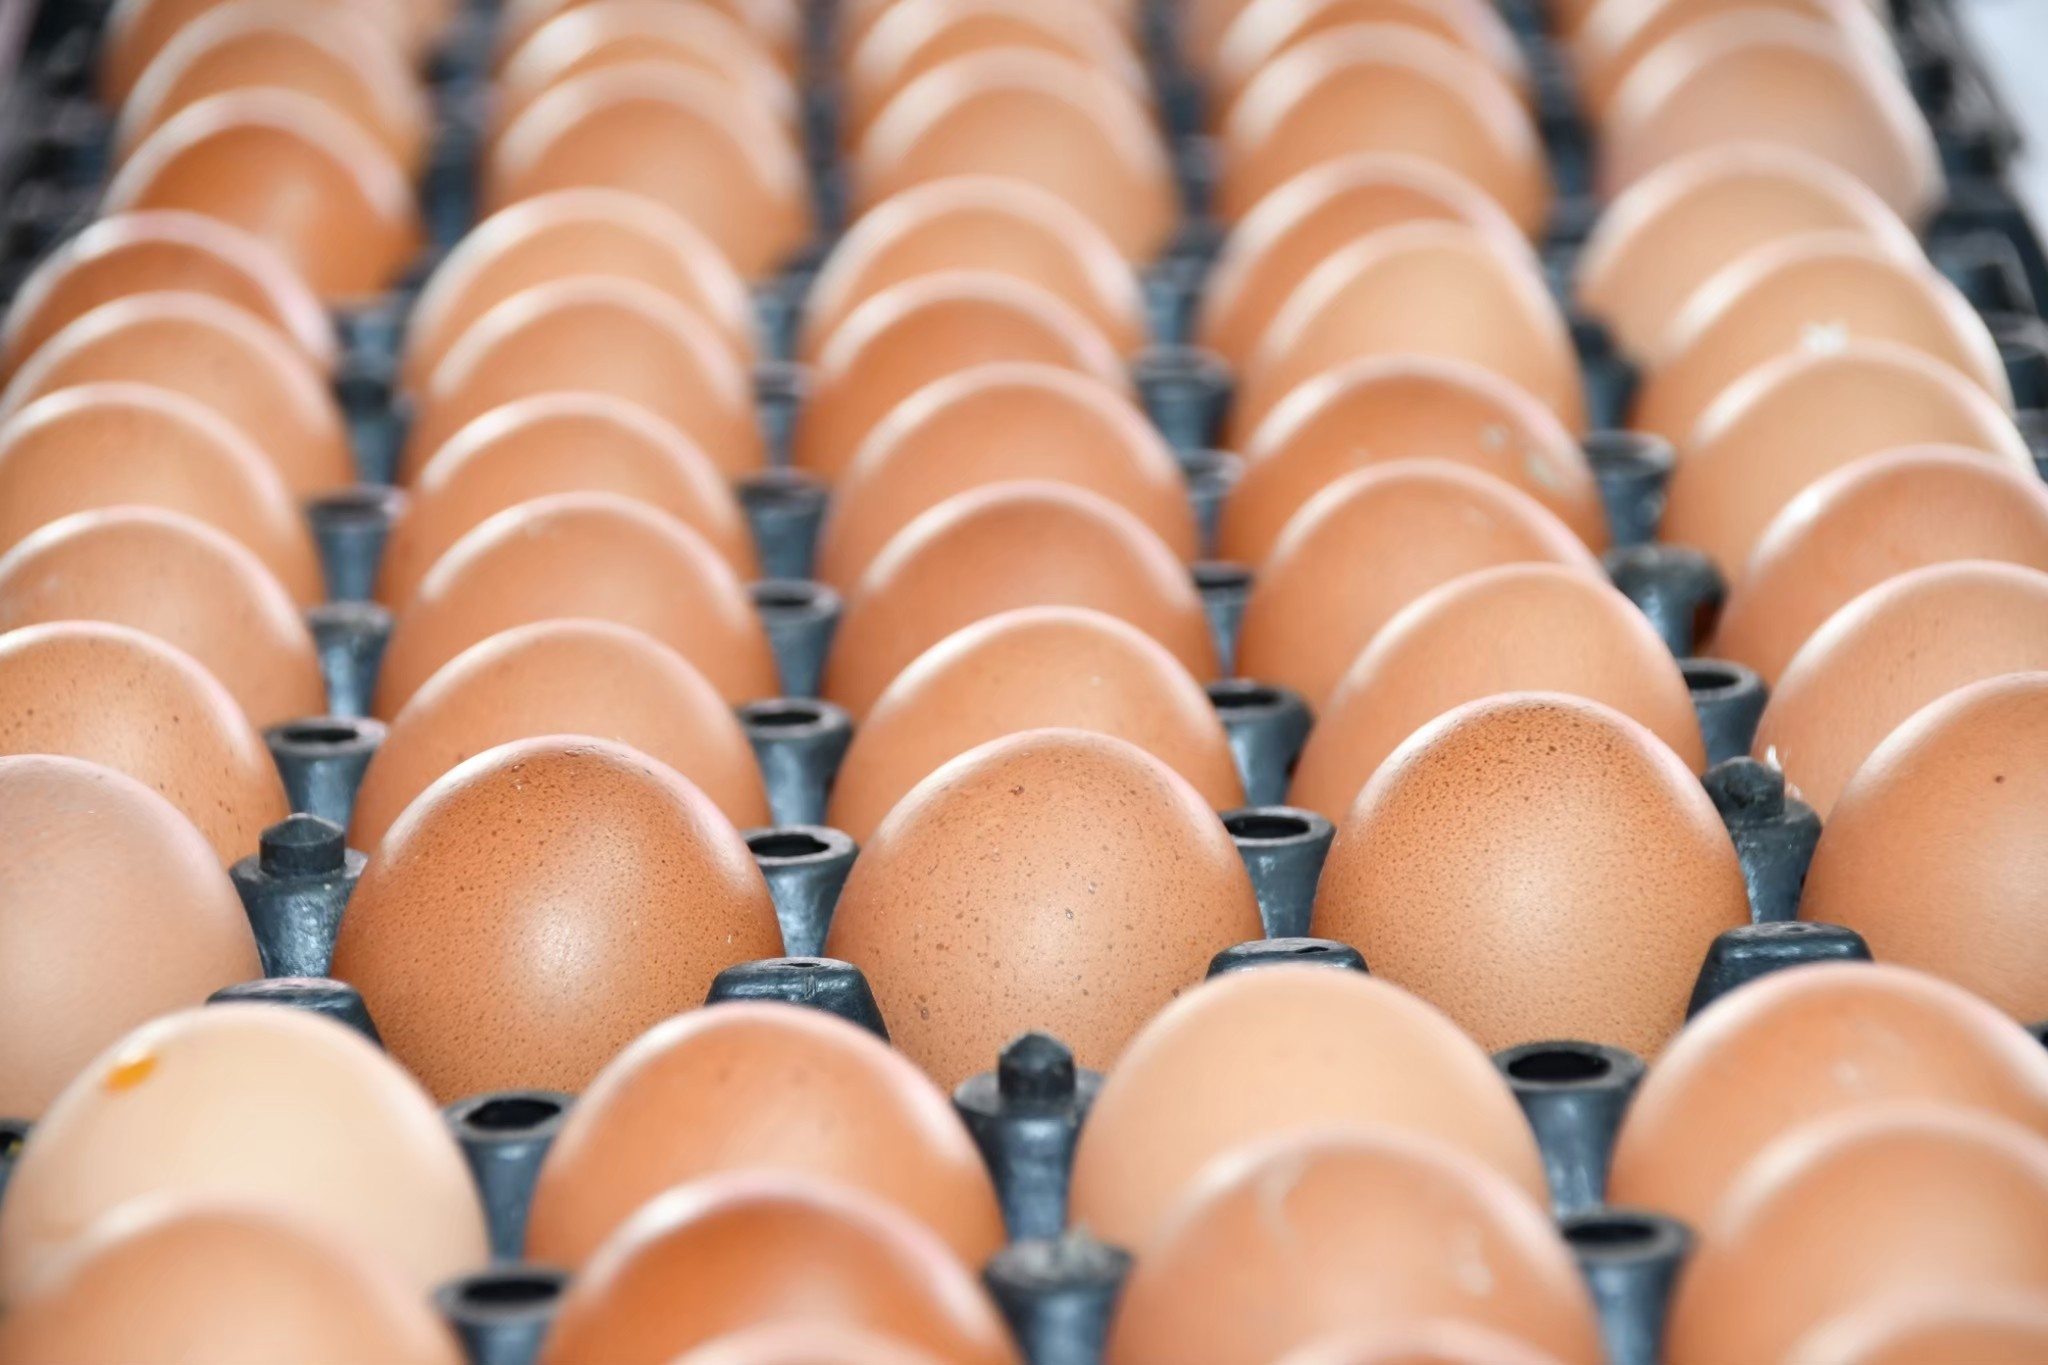 เตรียมตัวให้พร้อม! เติมน้ำมันพีทีที สเตชั่น แลกไข่ไก่ 178 สาขาทั่วกรุงเทพ – เศรษฐกิจ